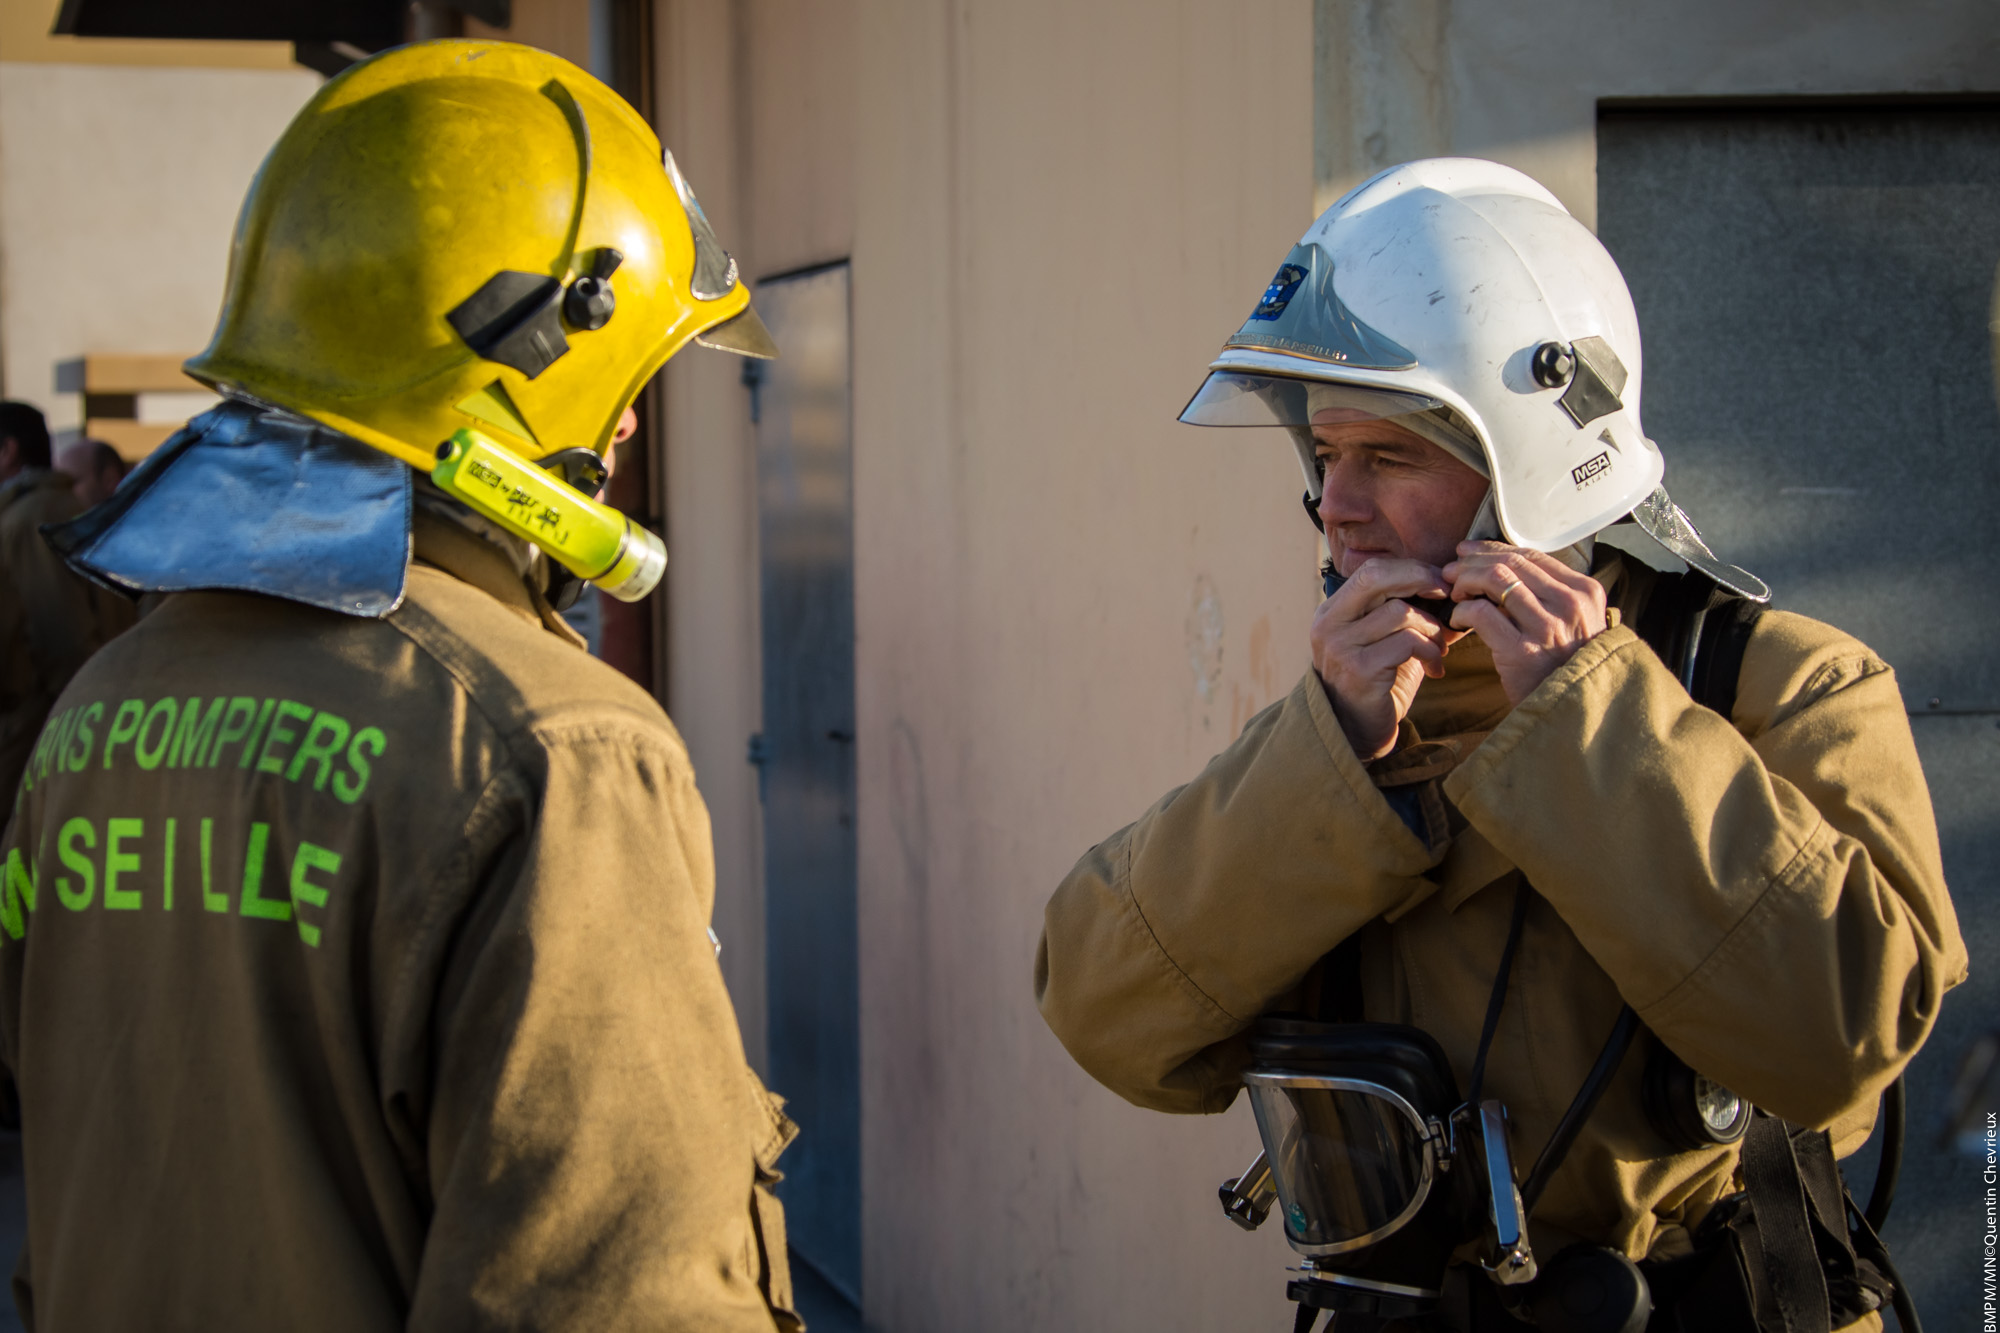 Entrainement marins-pompiers au CETIS